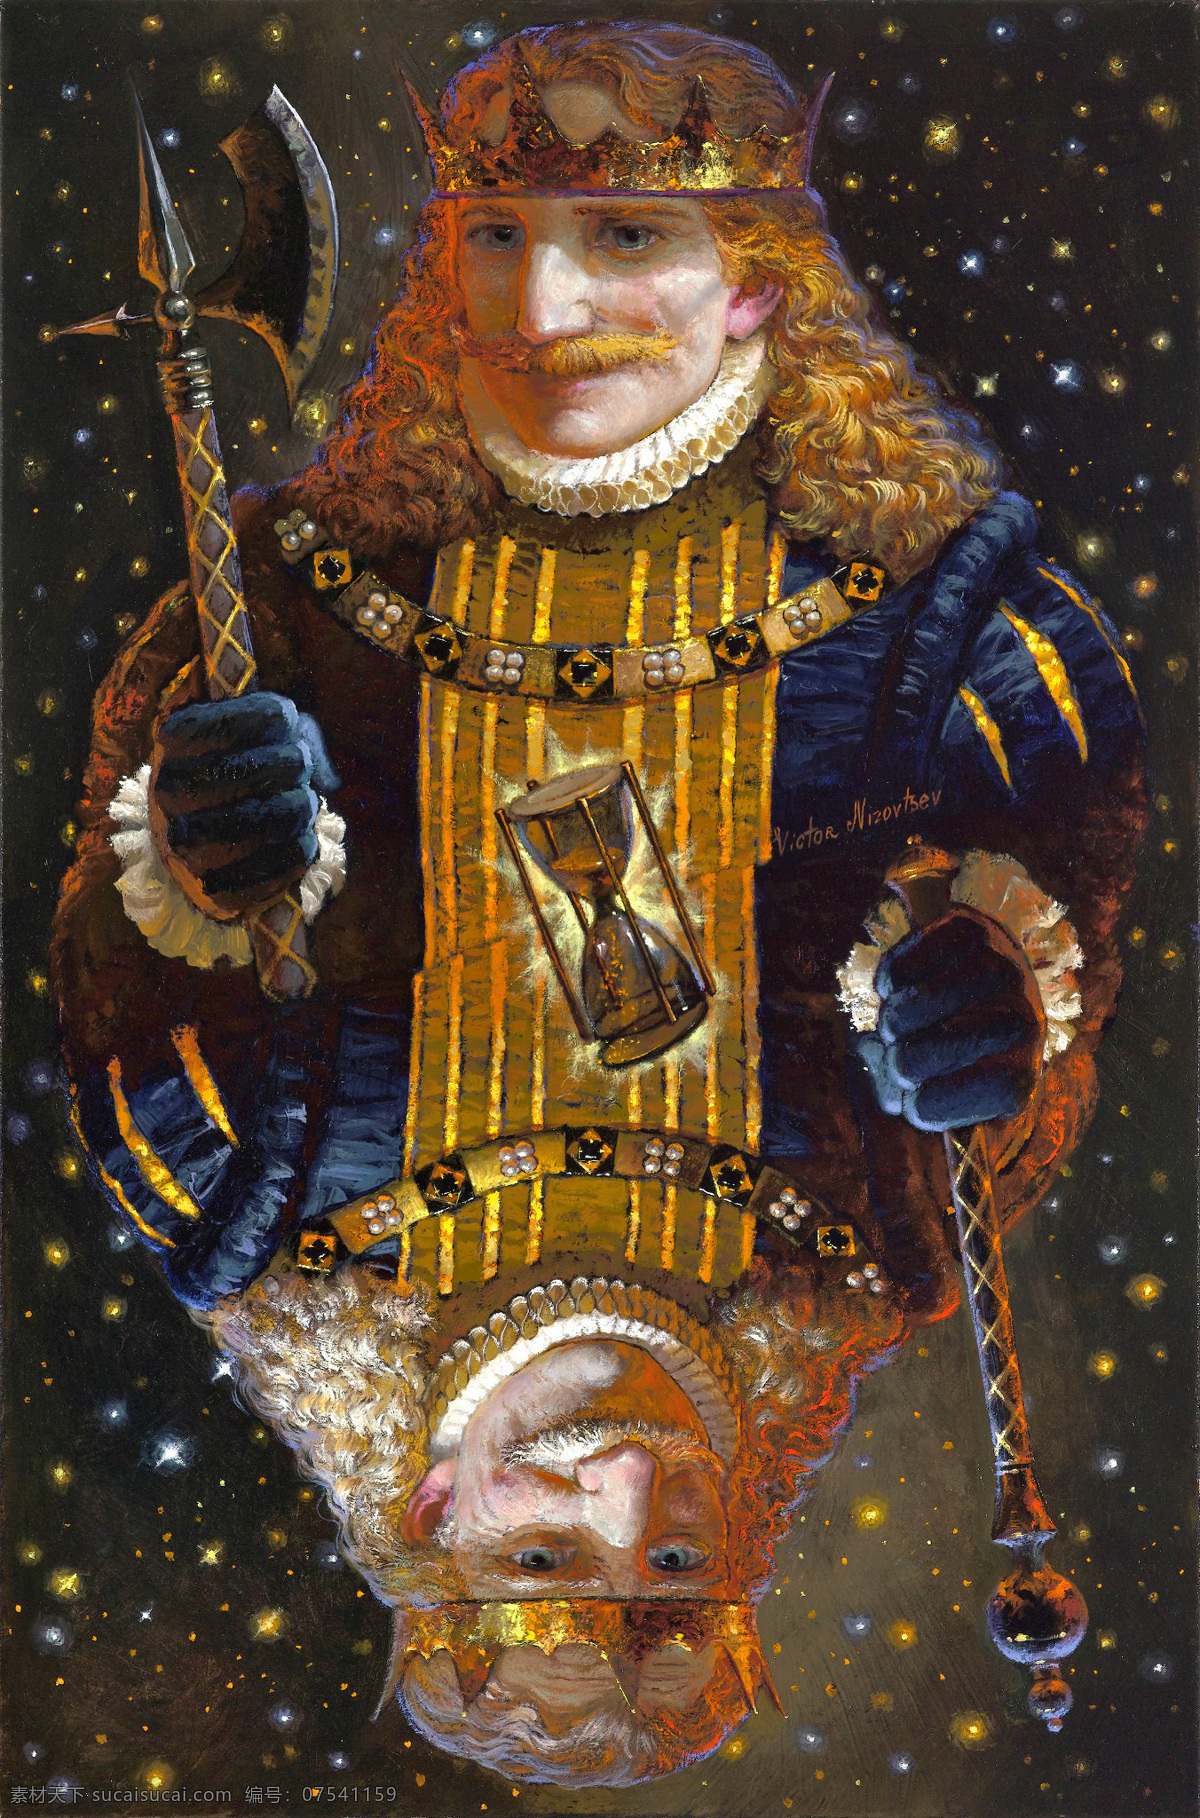 童话 国王 victor nizovtsev 俄国 俄罗斯油画 插画 星光 斧子 权杖 倒影 魔法 时间魔法 漏斗 童话世界 绘画书法 文化艺术